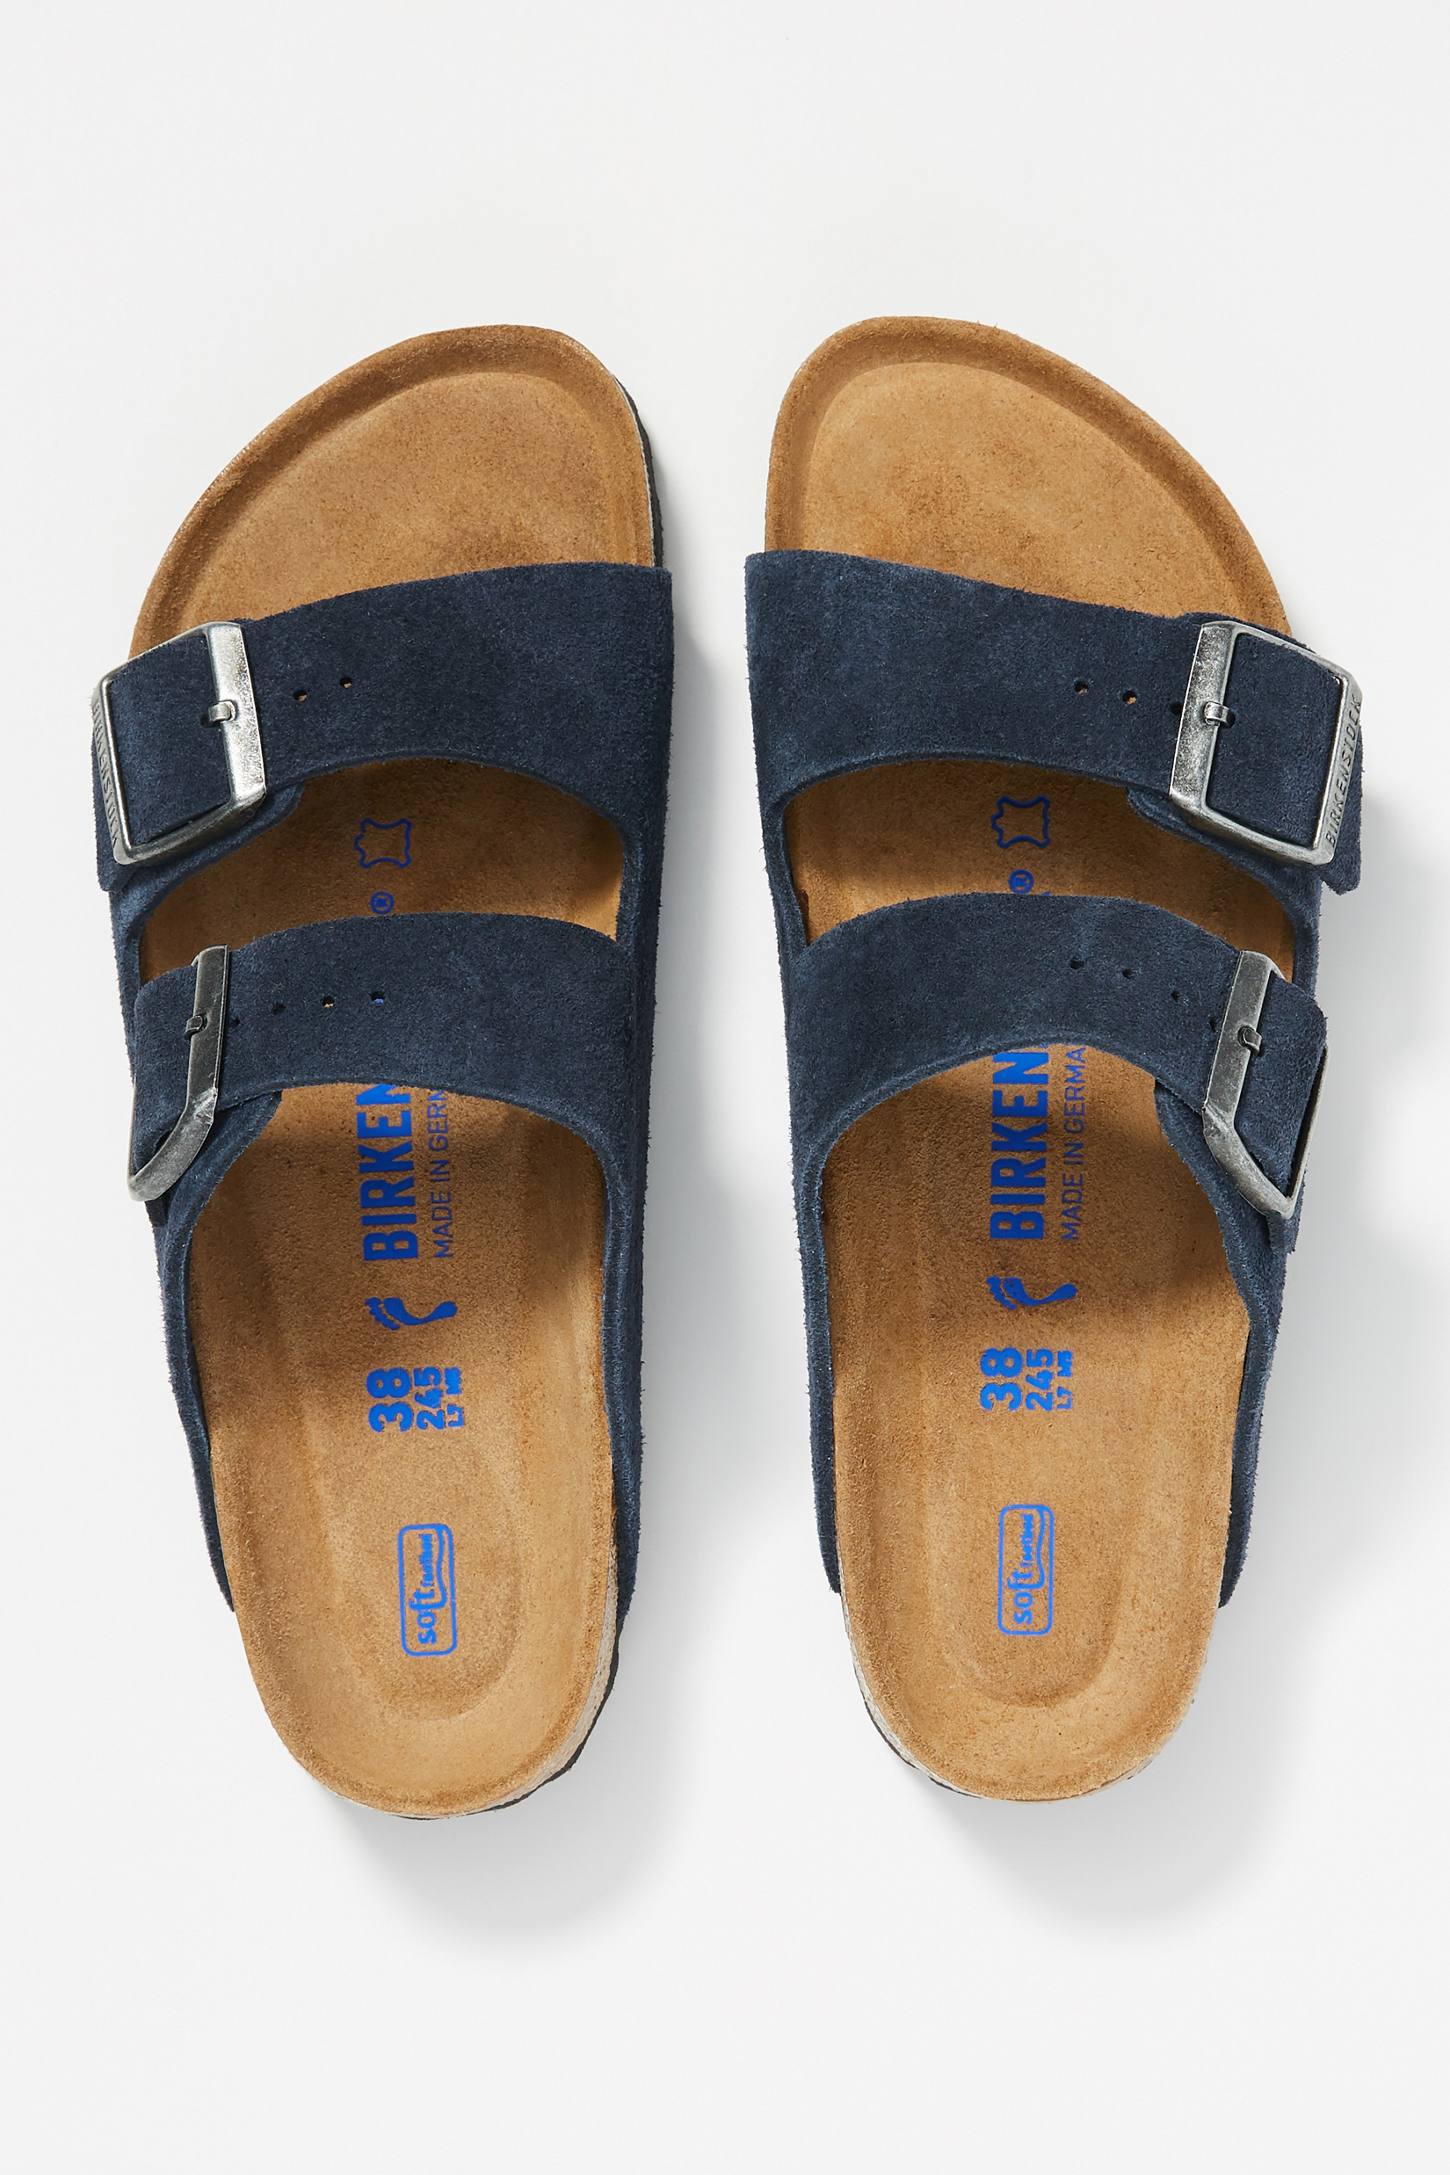 Blue Birkenstock Sandals